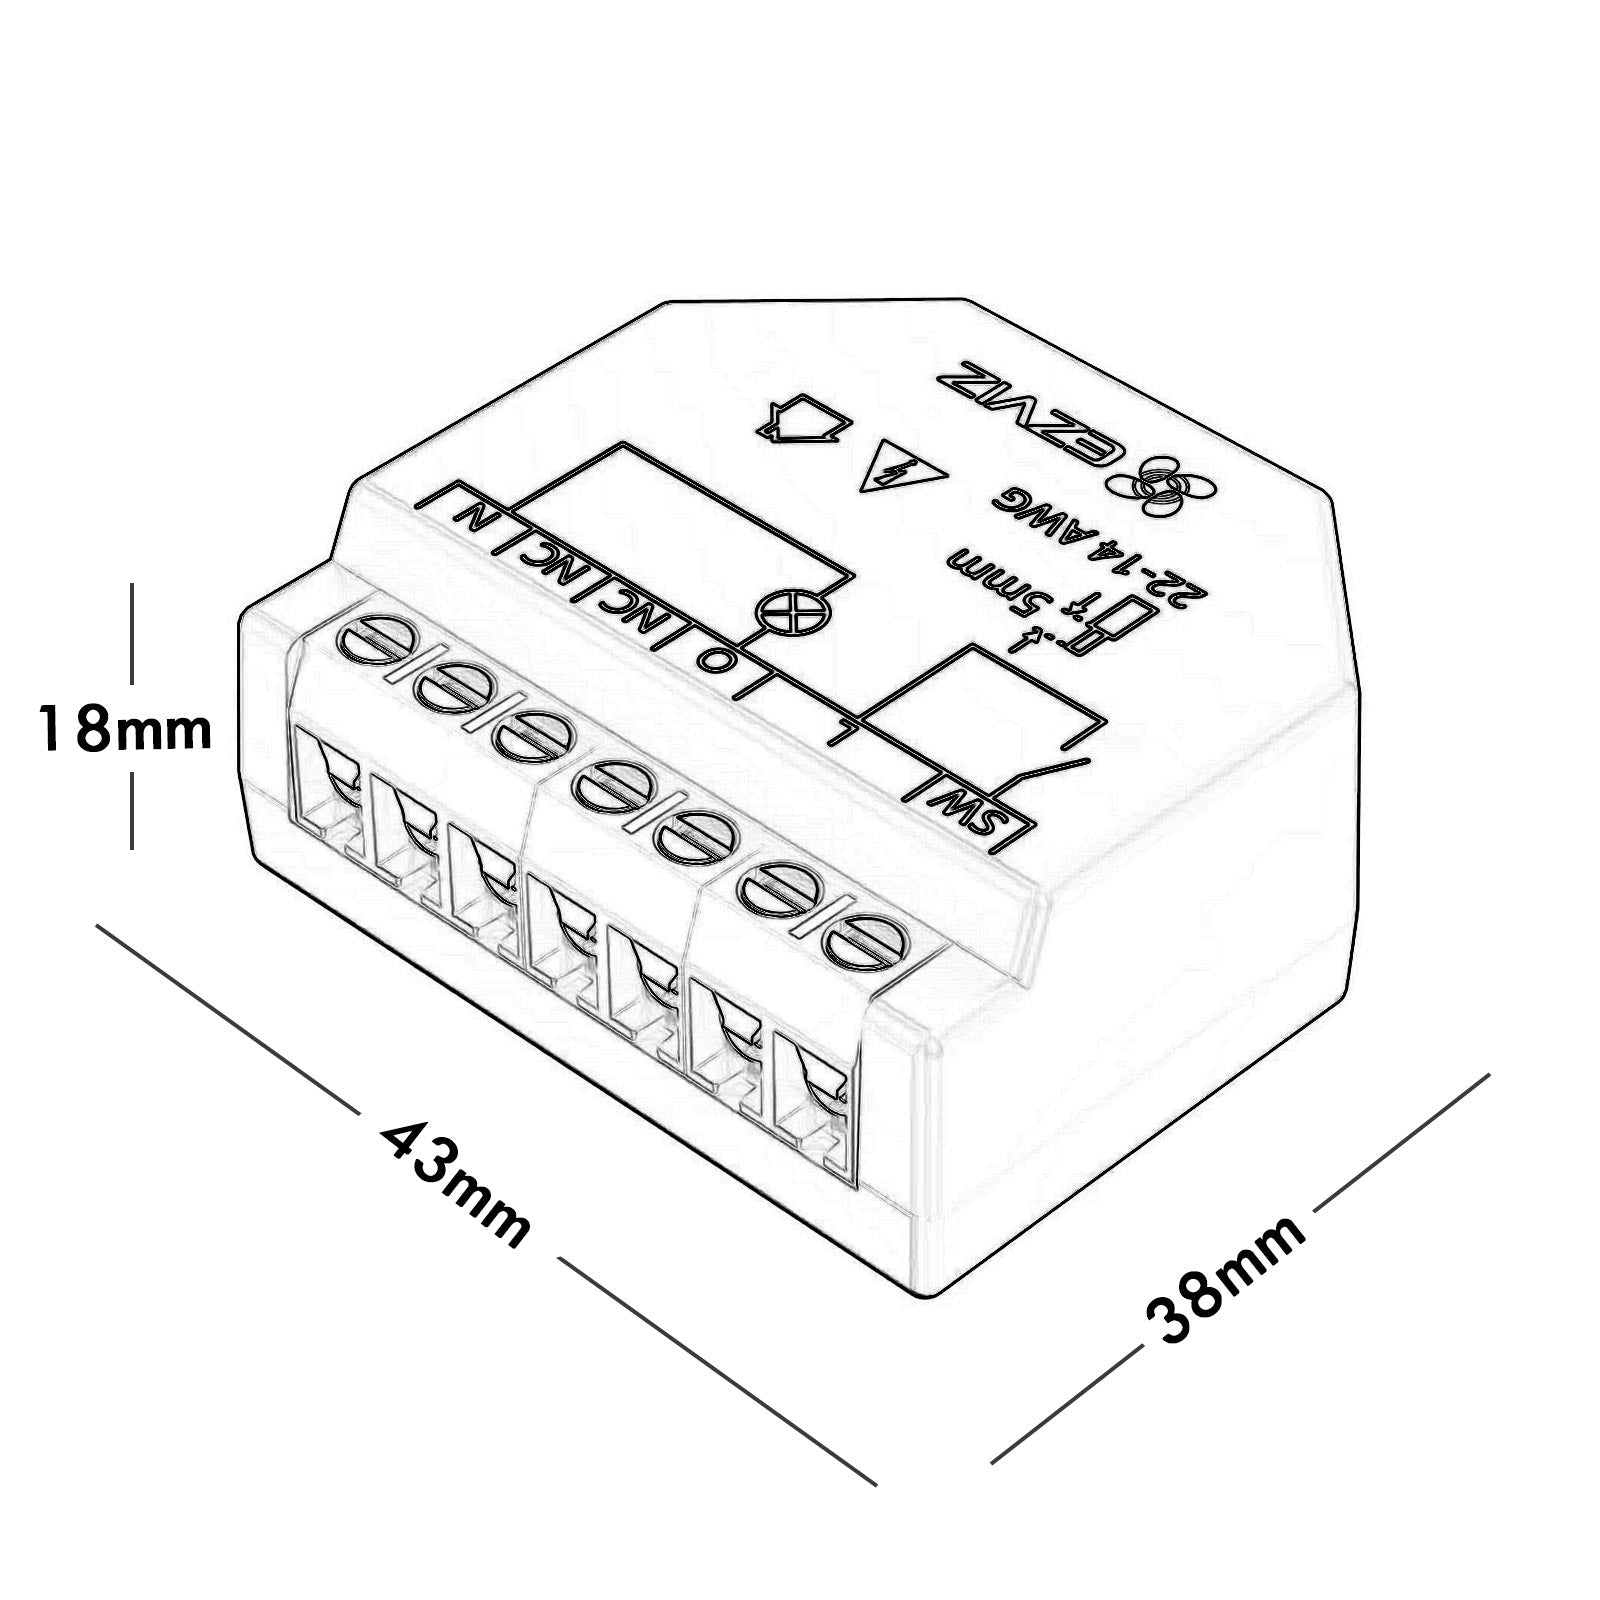 Mini rele EZVIZ impianti domotica interruttore 1 CH canale SMART WiFi controllo luci monitoraggio consumi compatibile APP Alexa e Google